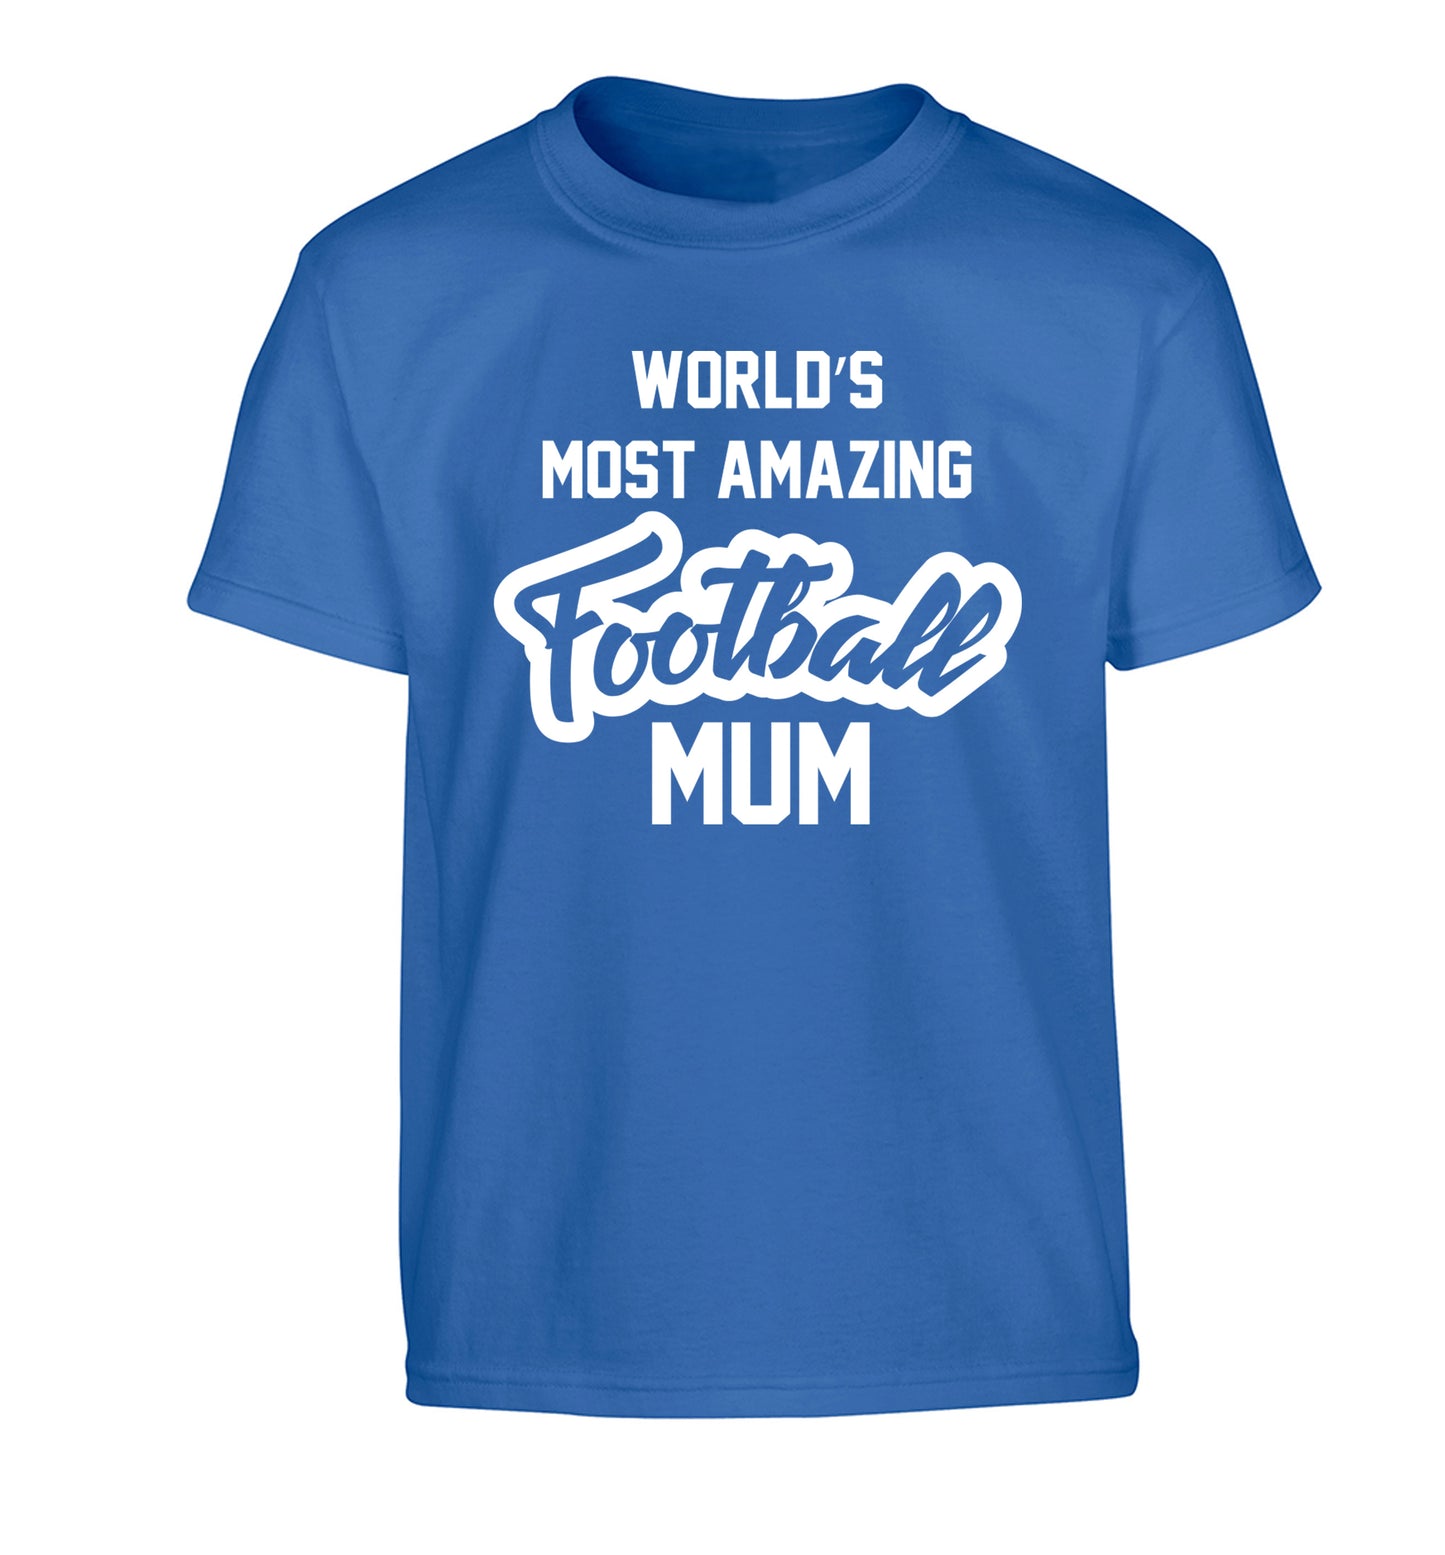 Worlds most amazing football mum Children's blue Tshirt 12-14 Years